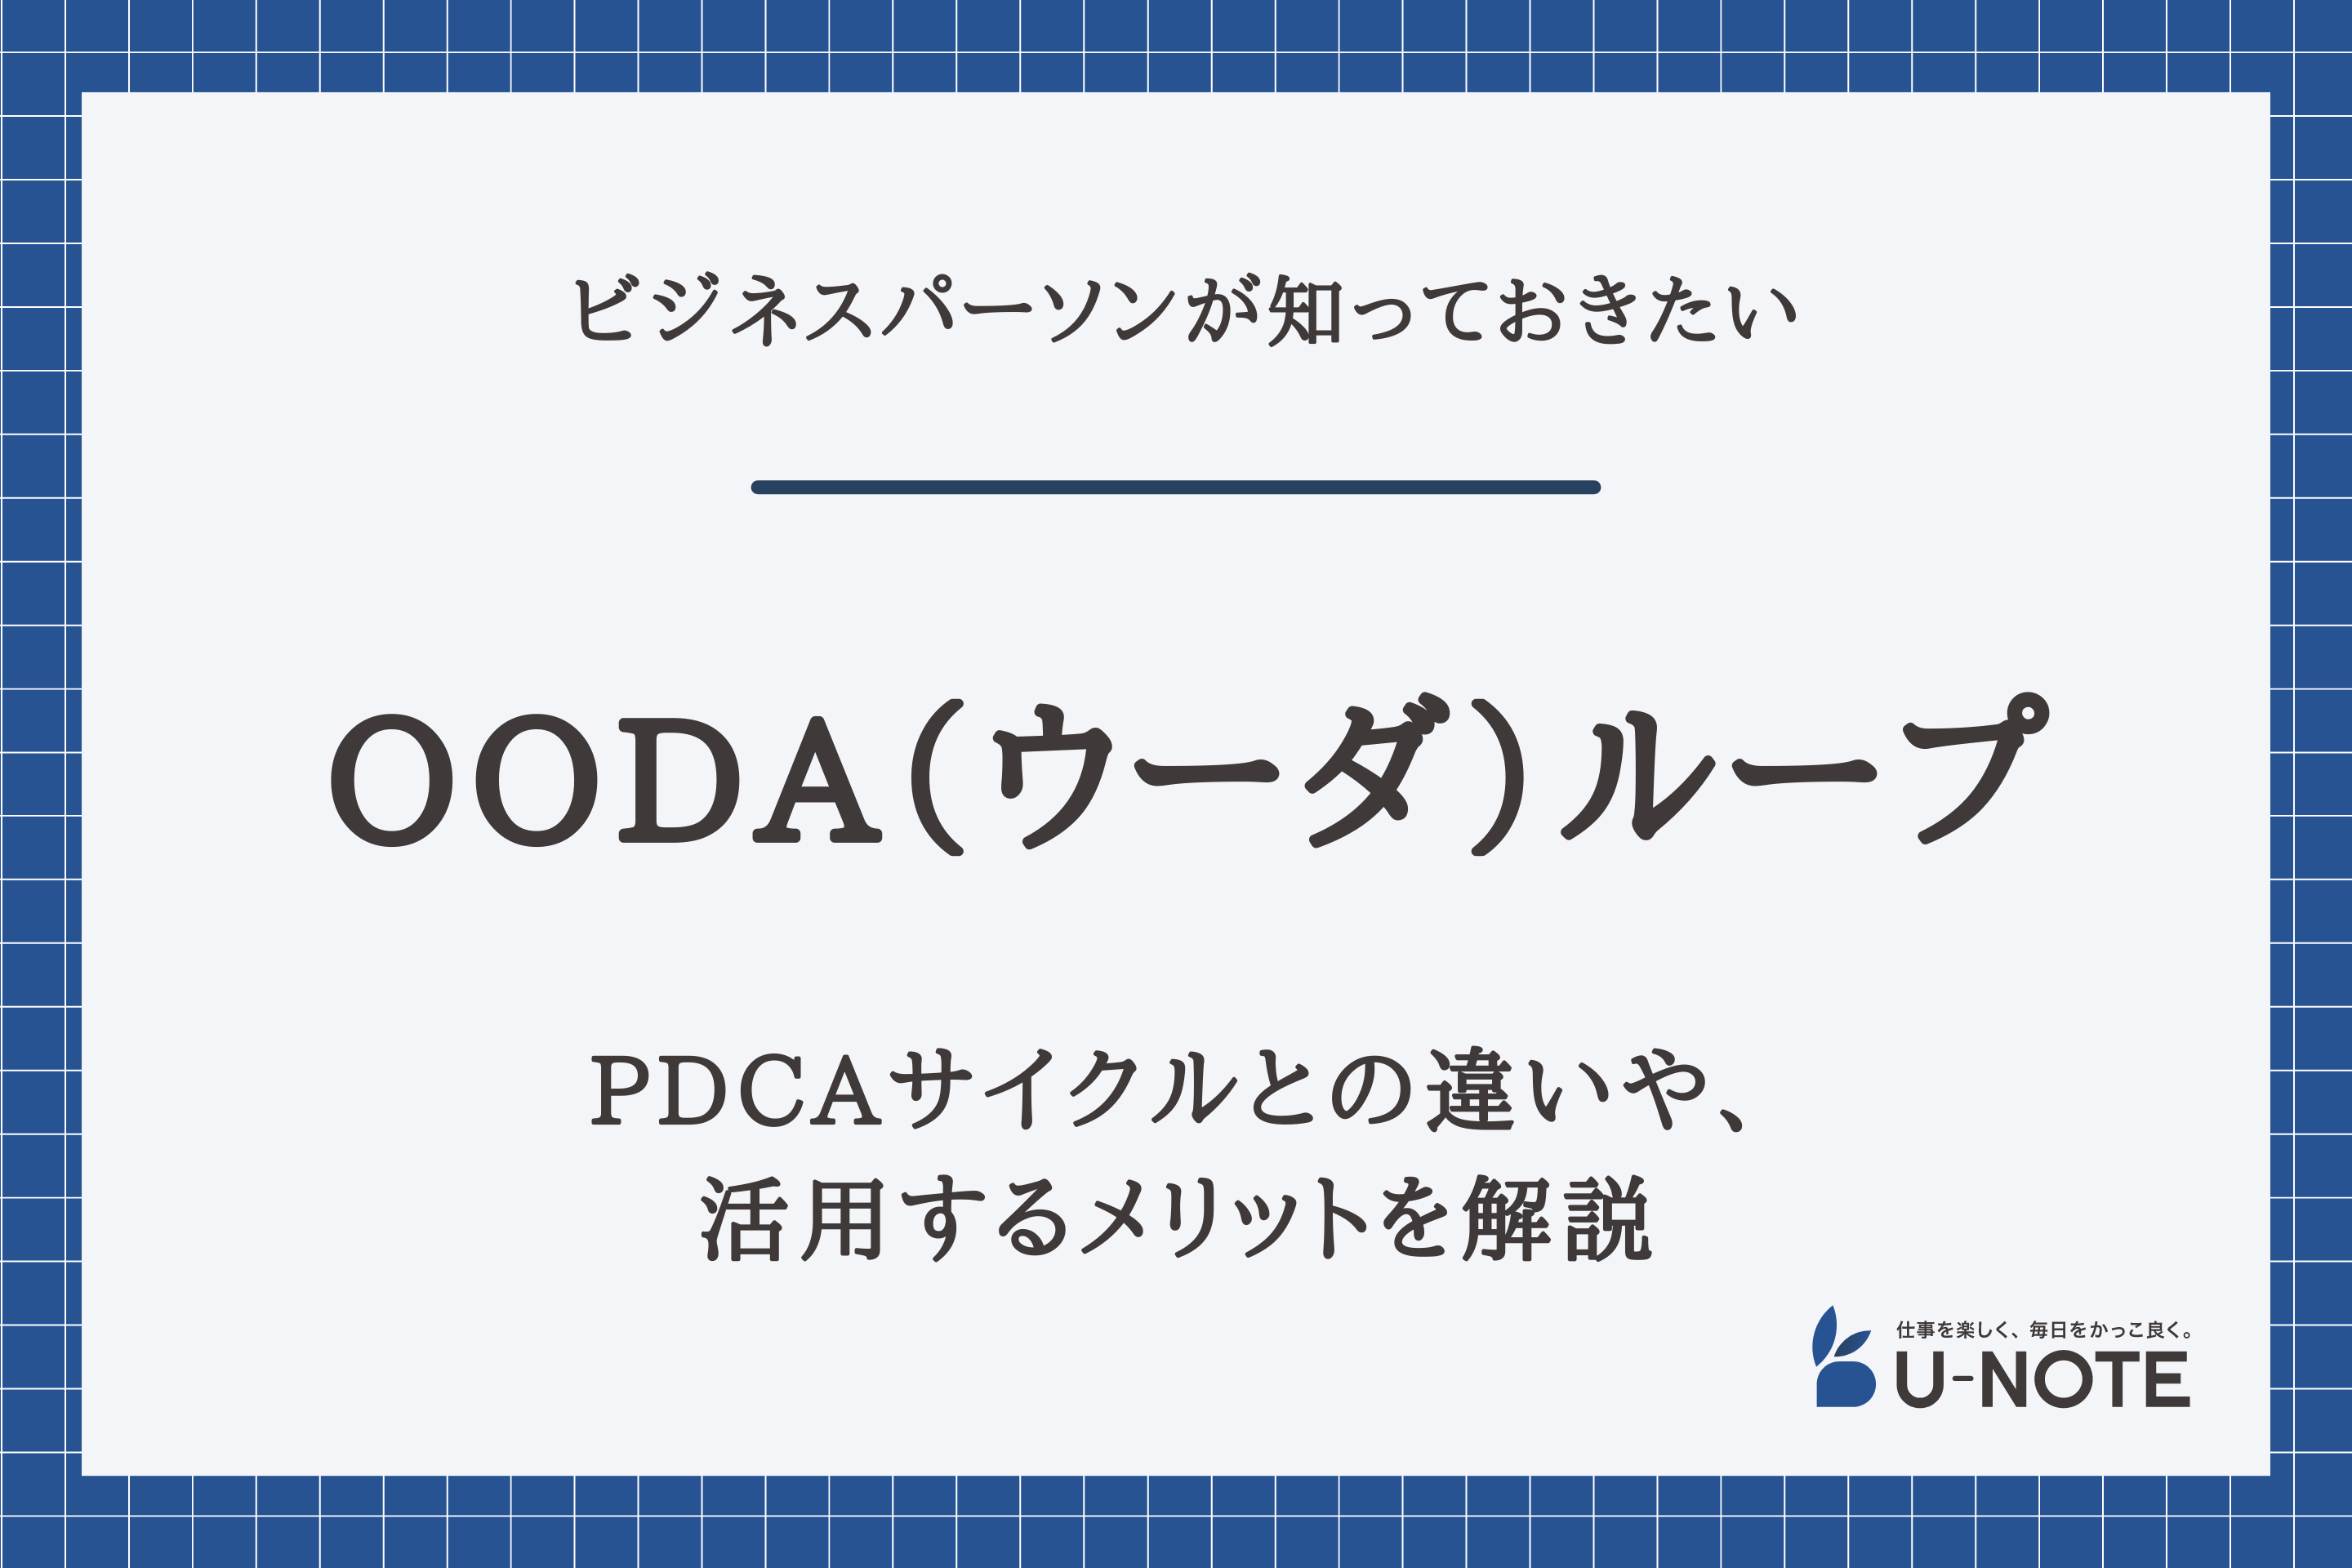 OODA（ウーダ）ループとは？PDCAサイクルとの違いや、メリットを解説